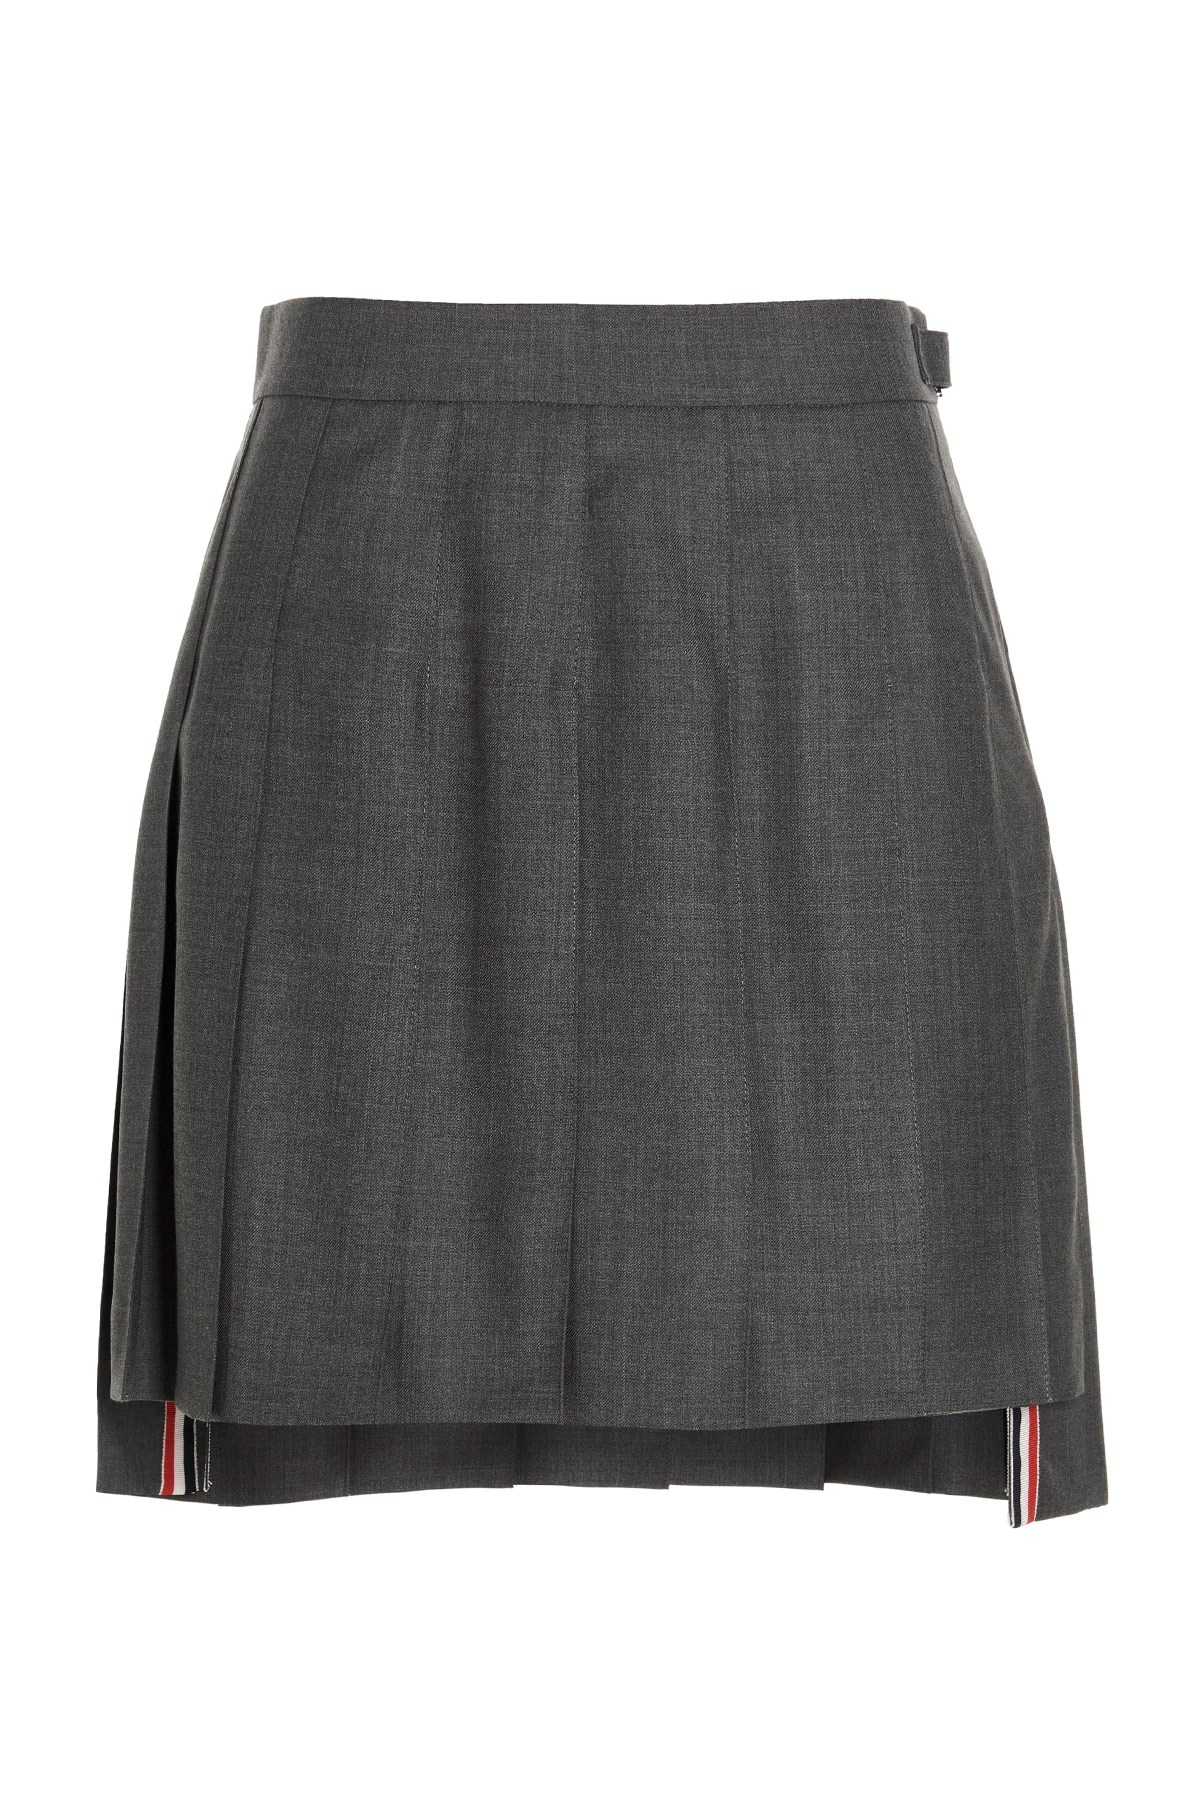 THOM BROWNE 'Uniform’ Miniskirt